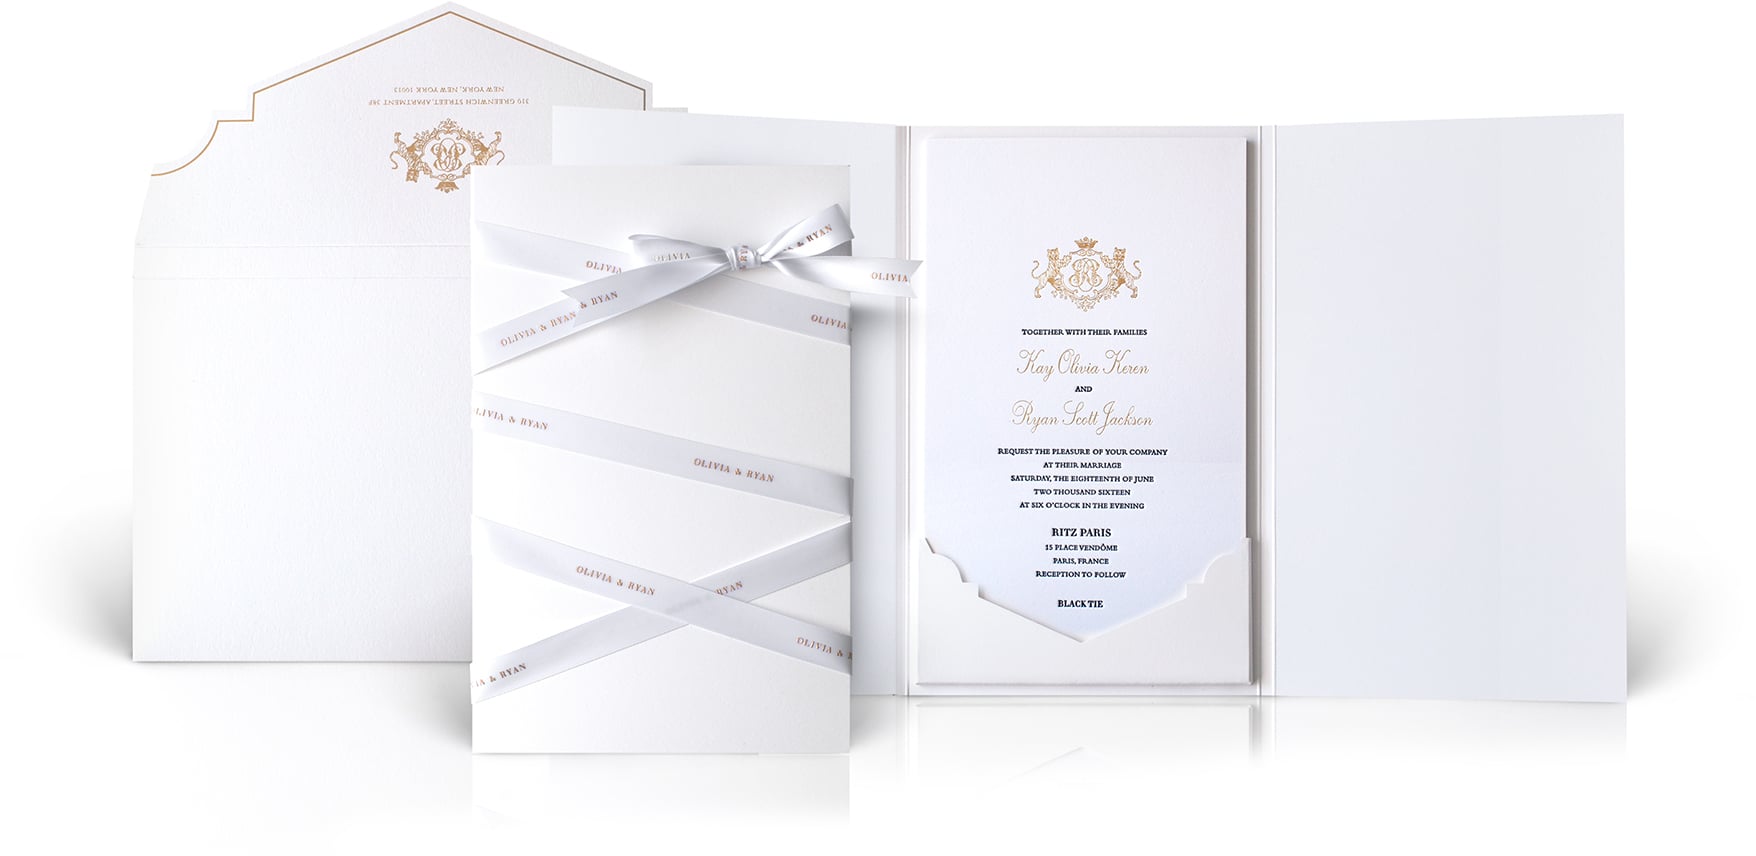 Ritz Paris luxury wedding invitation